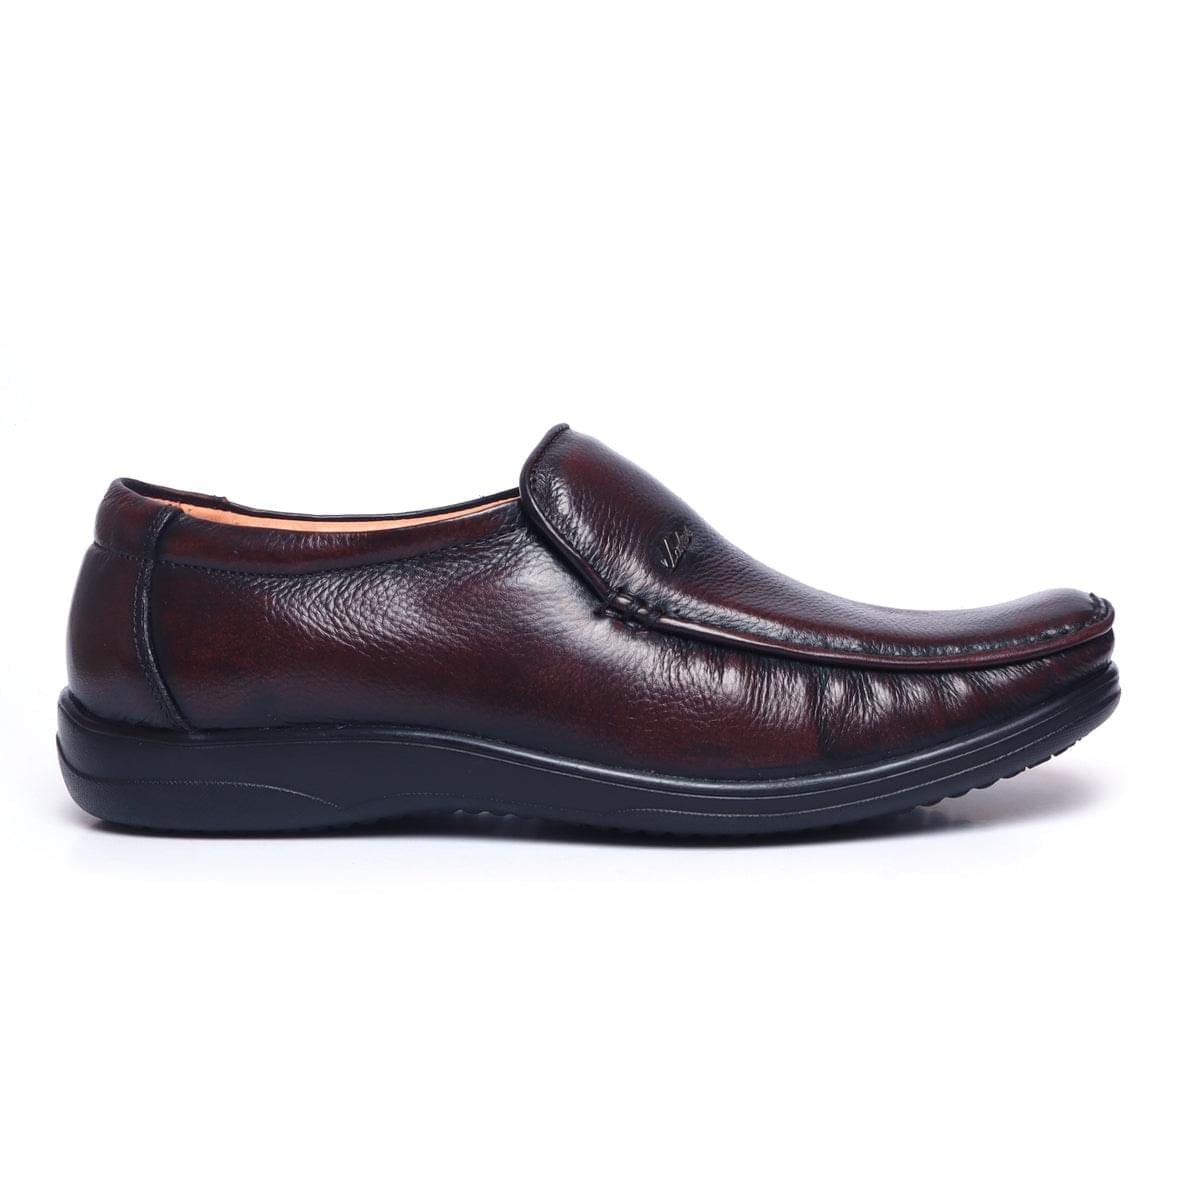 Formal Shoes for Men D-103_brown1